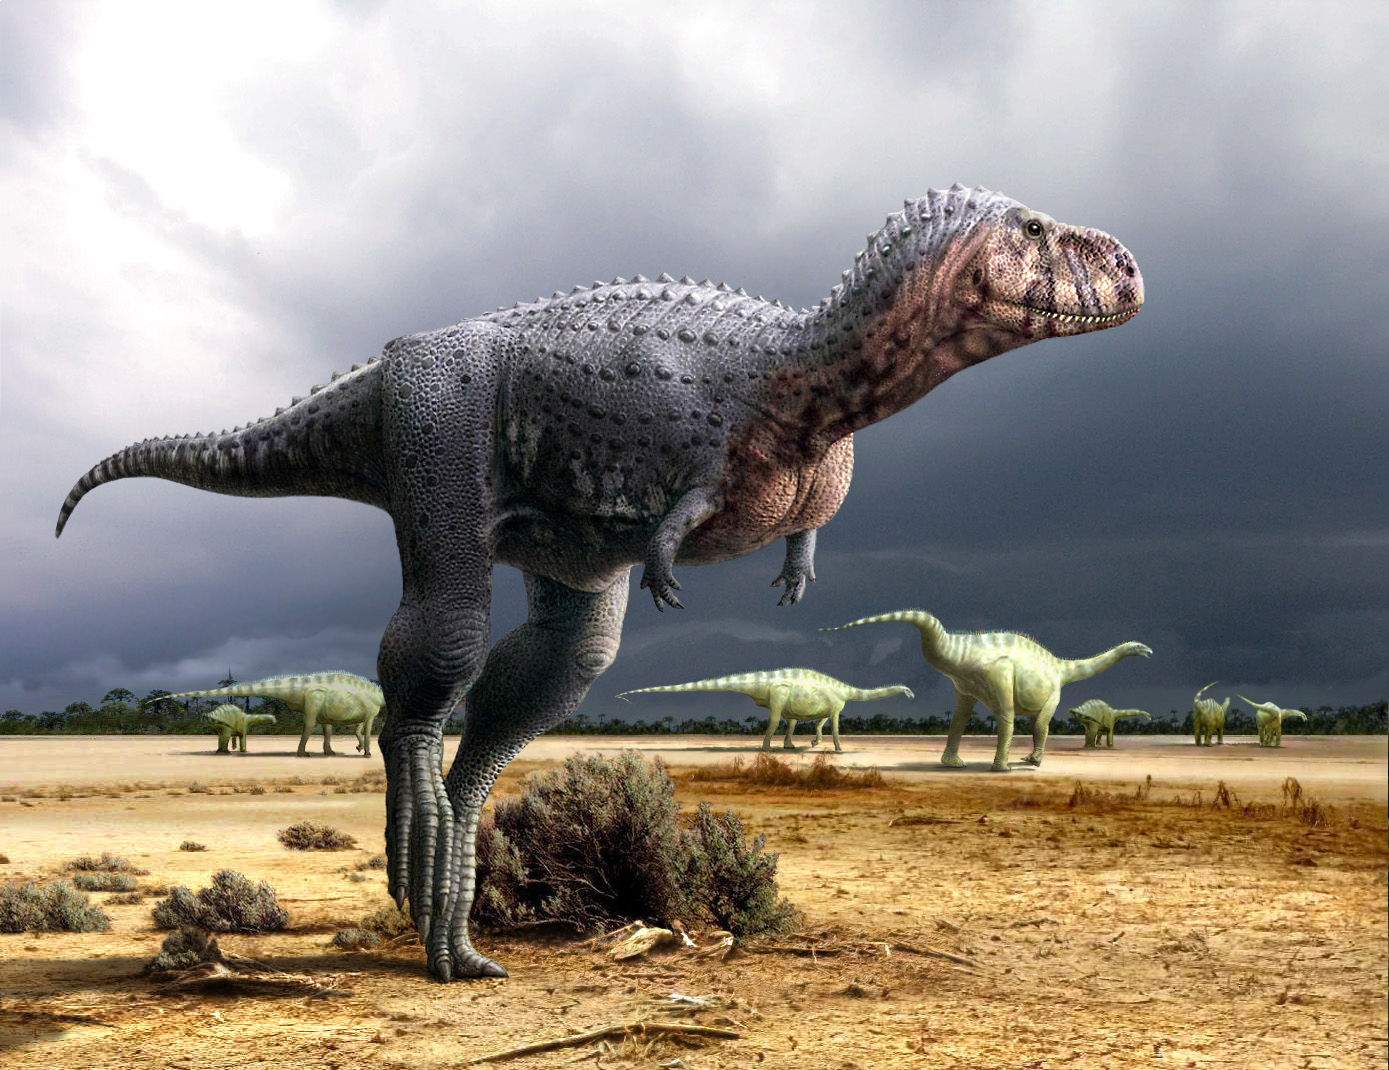 Las mejores ilustraciones de dinosaurios